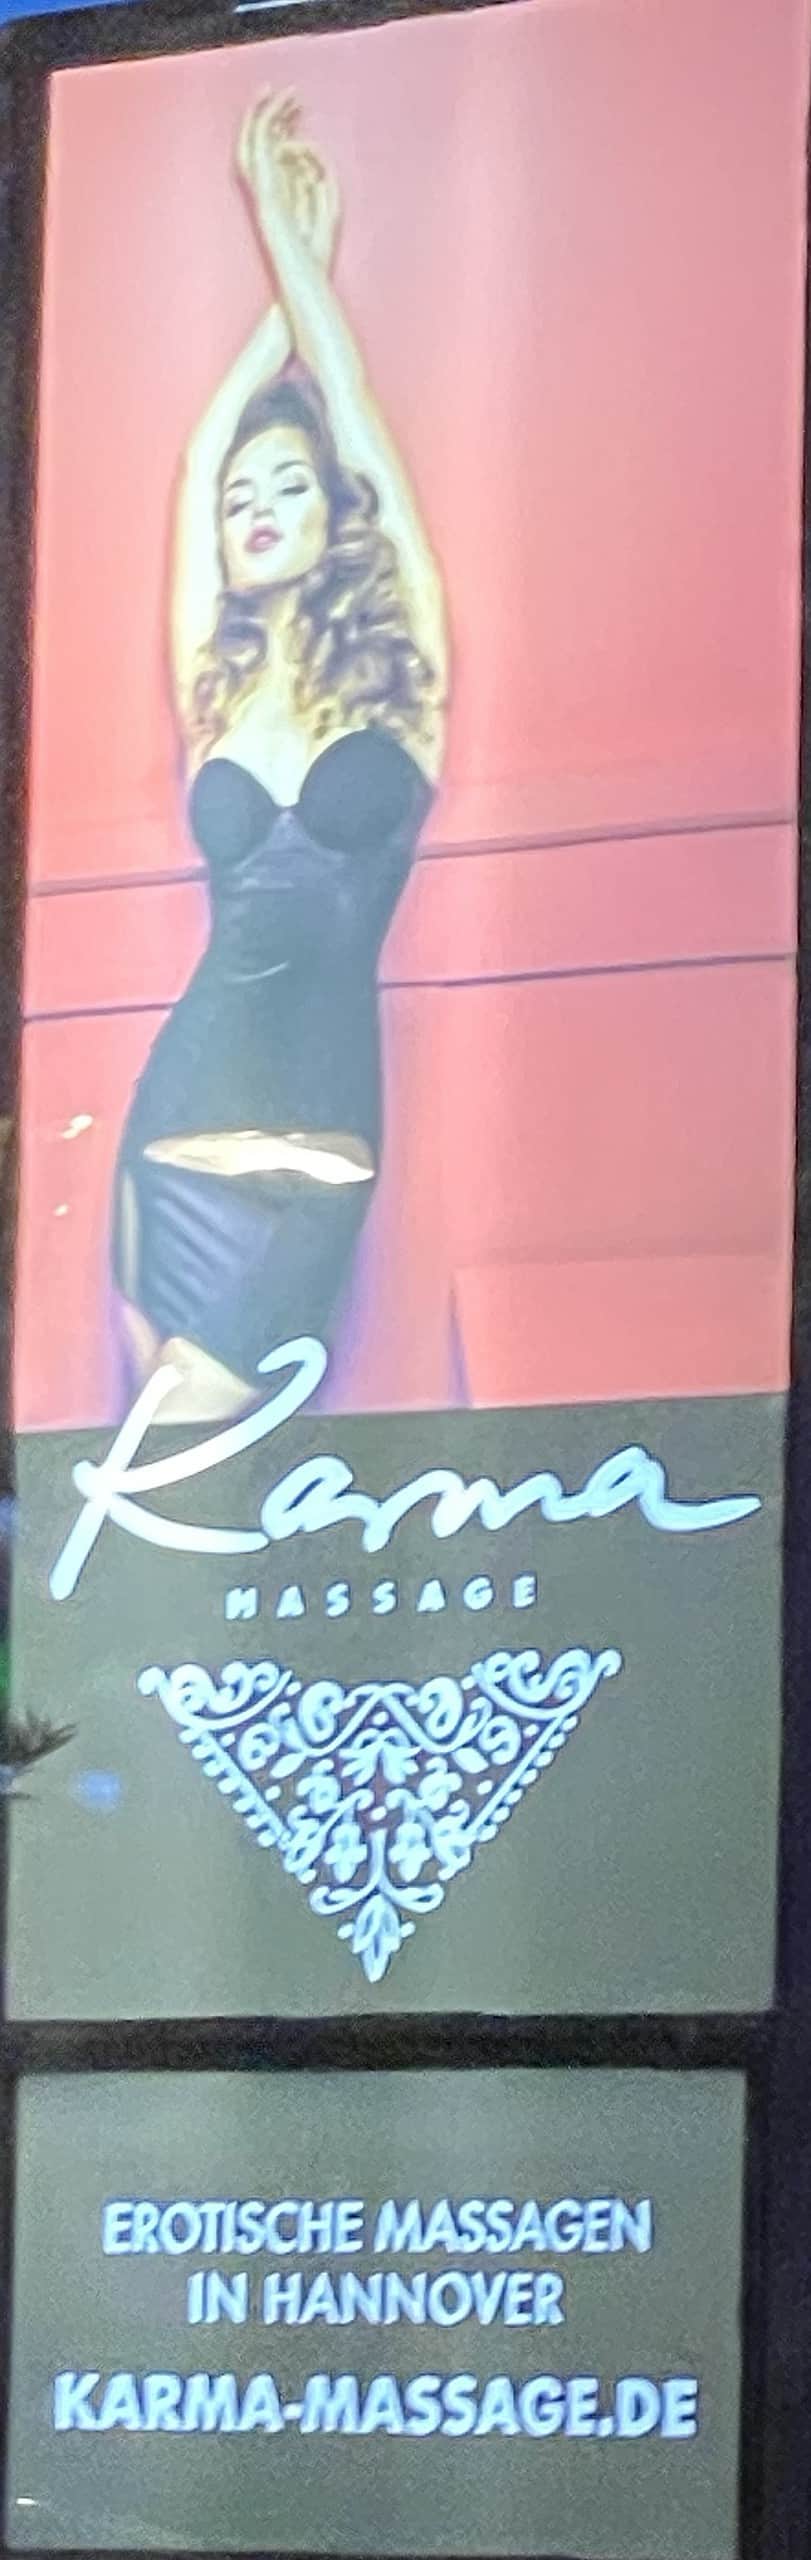 Werbung für Karma-Massagen mit erotischer Frau, lange blonde Locken und schwarze Dessous.